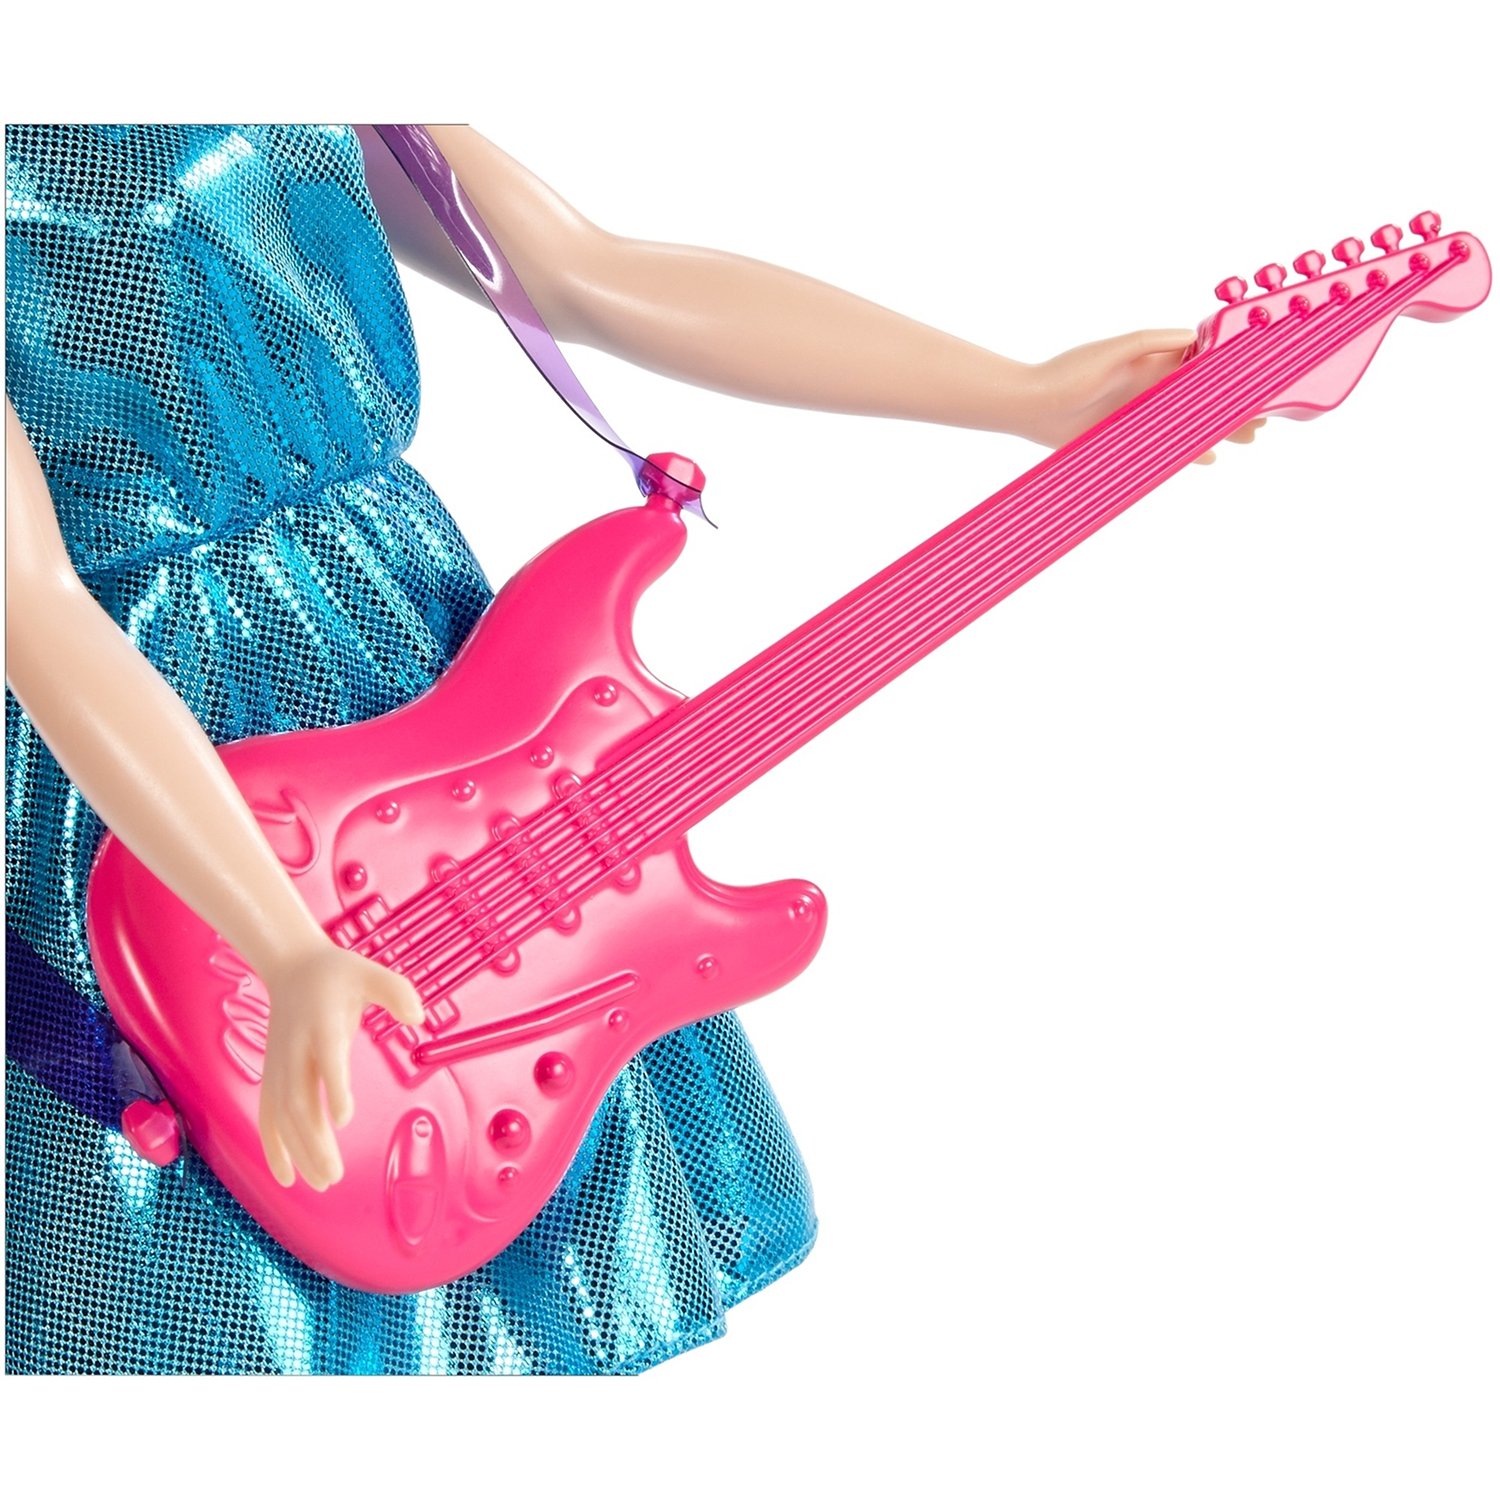 Кукла Barbie Кем быть? Поп-звезда, 29 см, DVF52